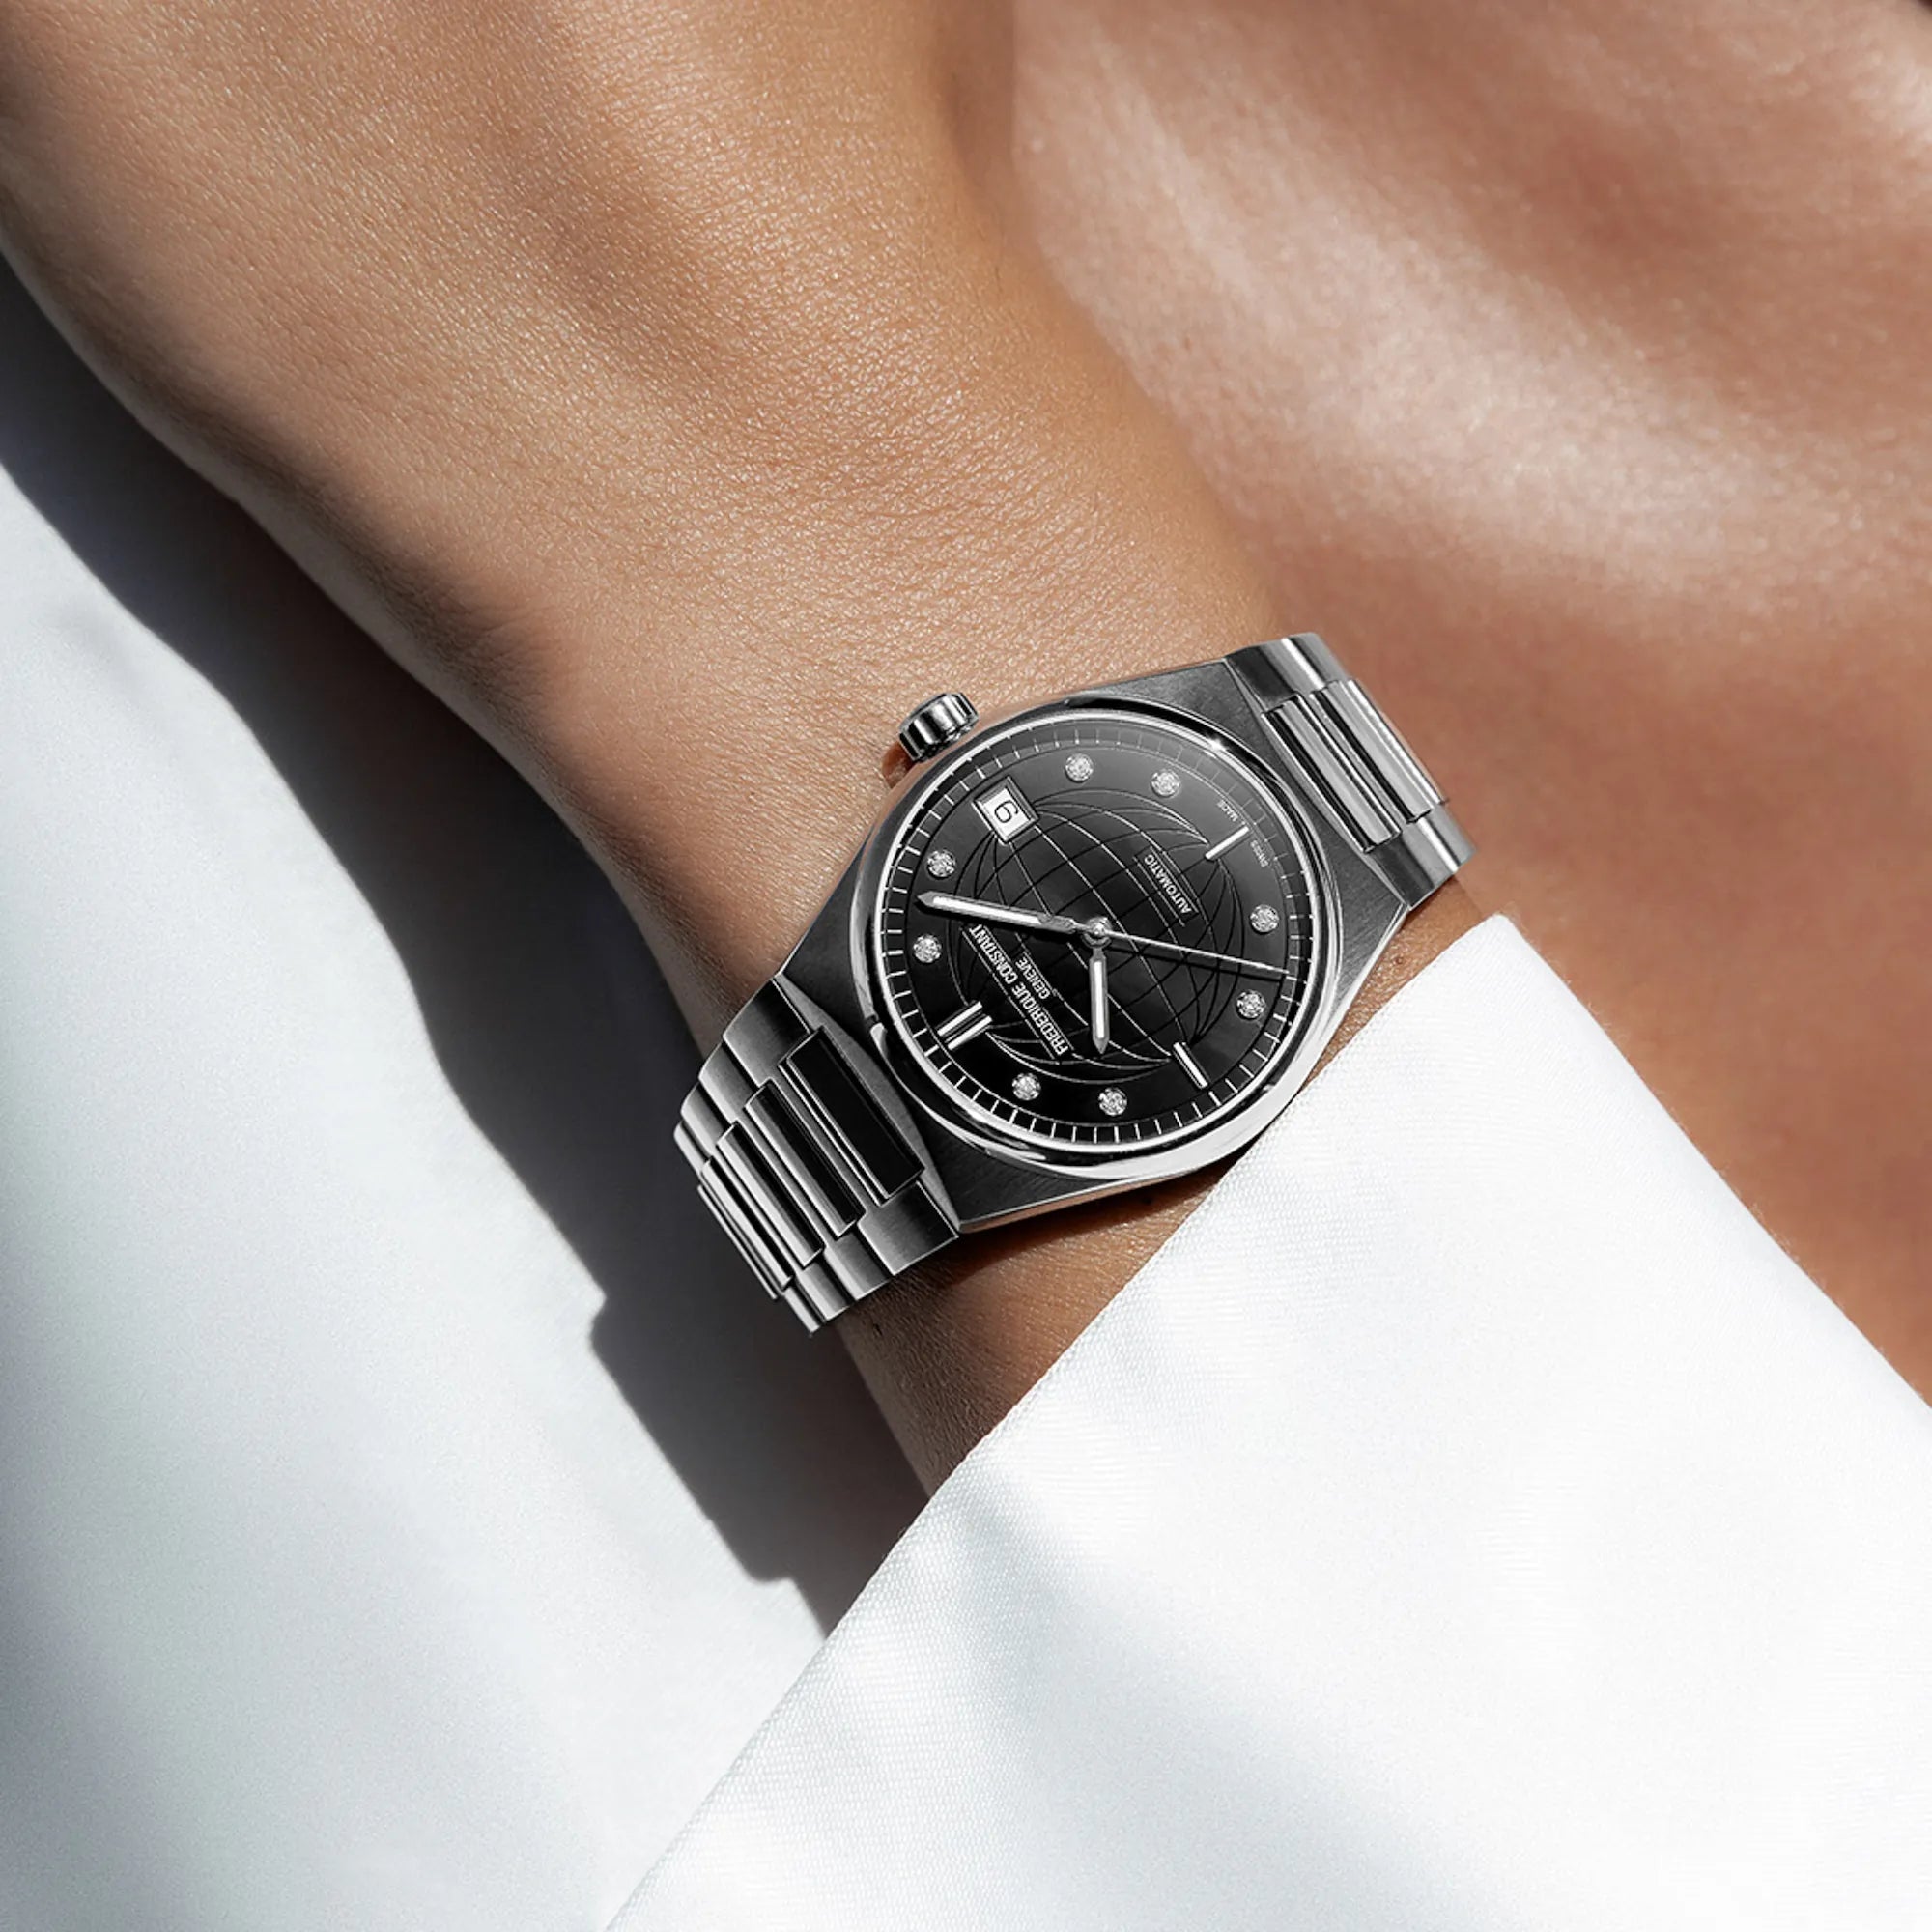 Frau trägt die Frederique Constant Uhr "Highlife Ladies Automatic" mit einem schwarzen Zifferblatt mit Diamant-Indizes und Edelstahl-Gehäuse an Ihrem Handgelenk